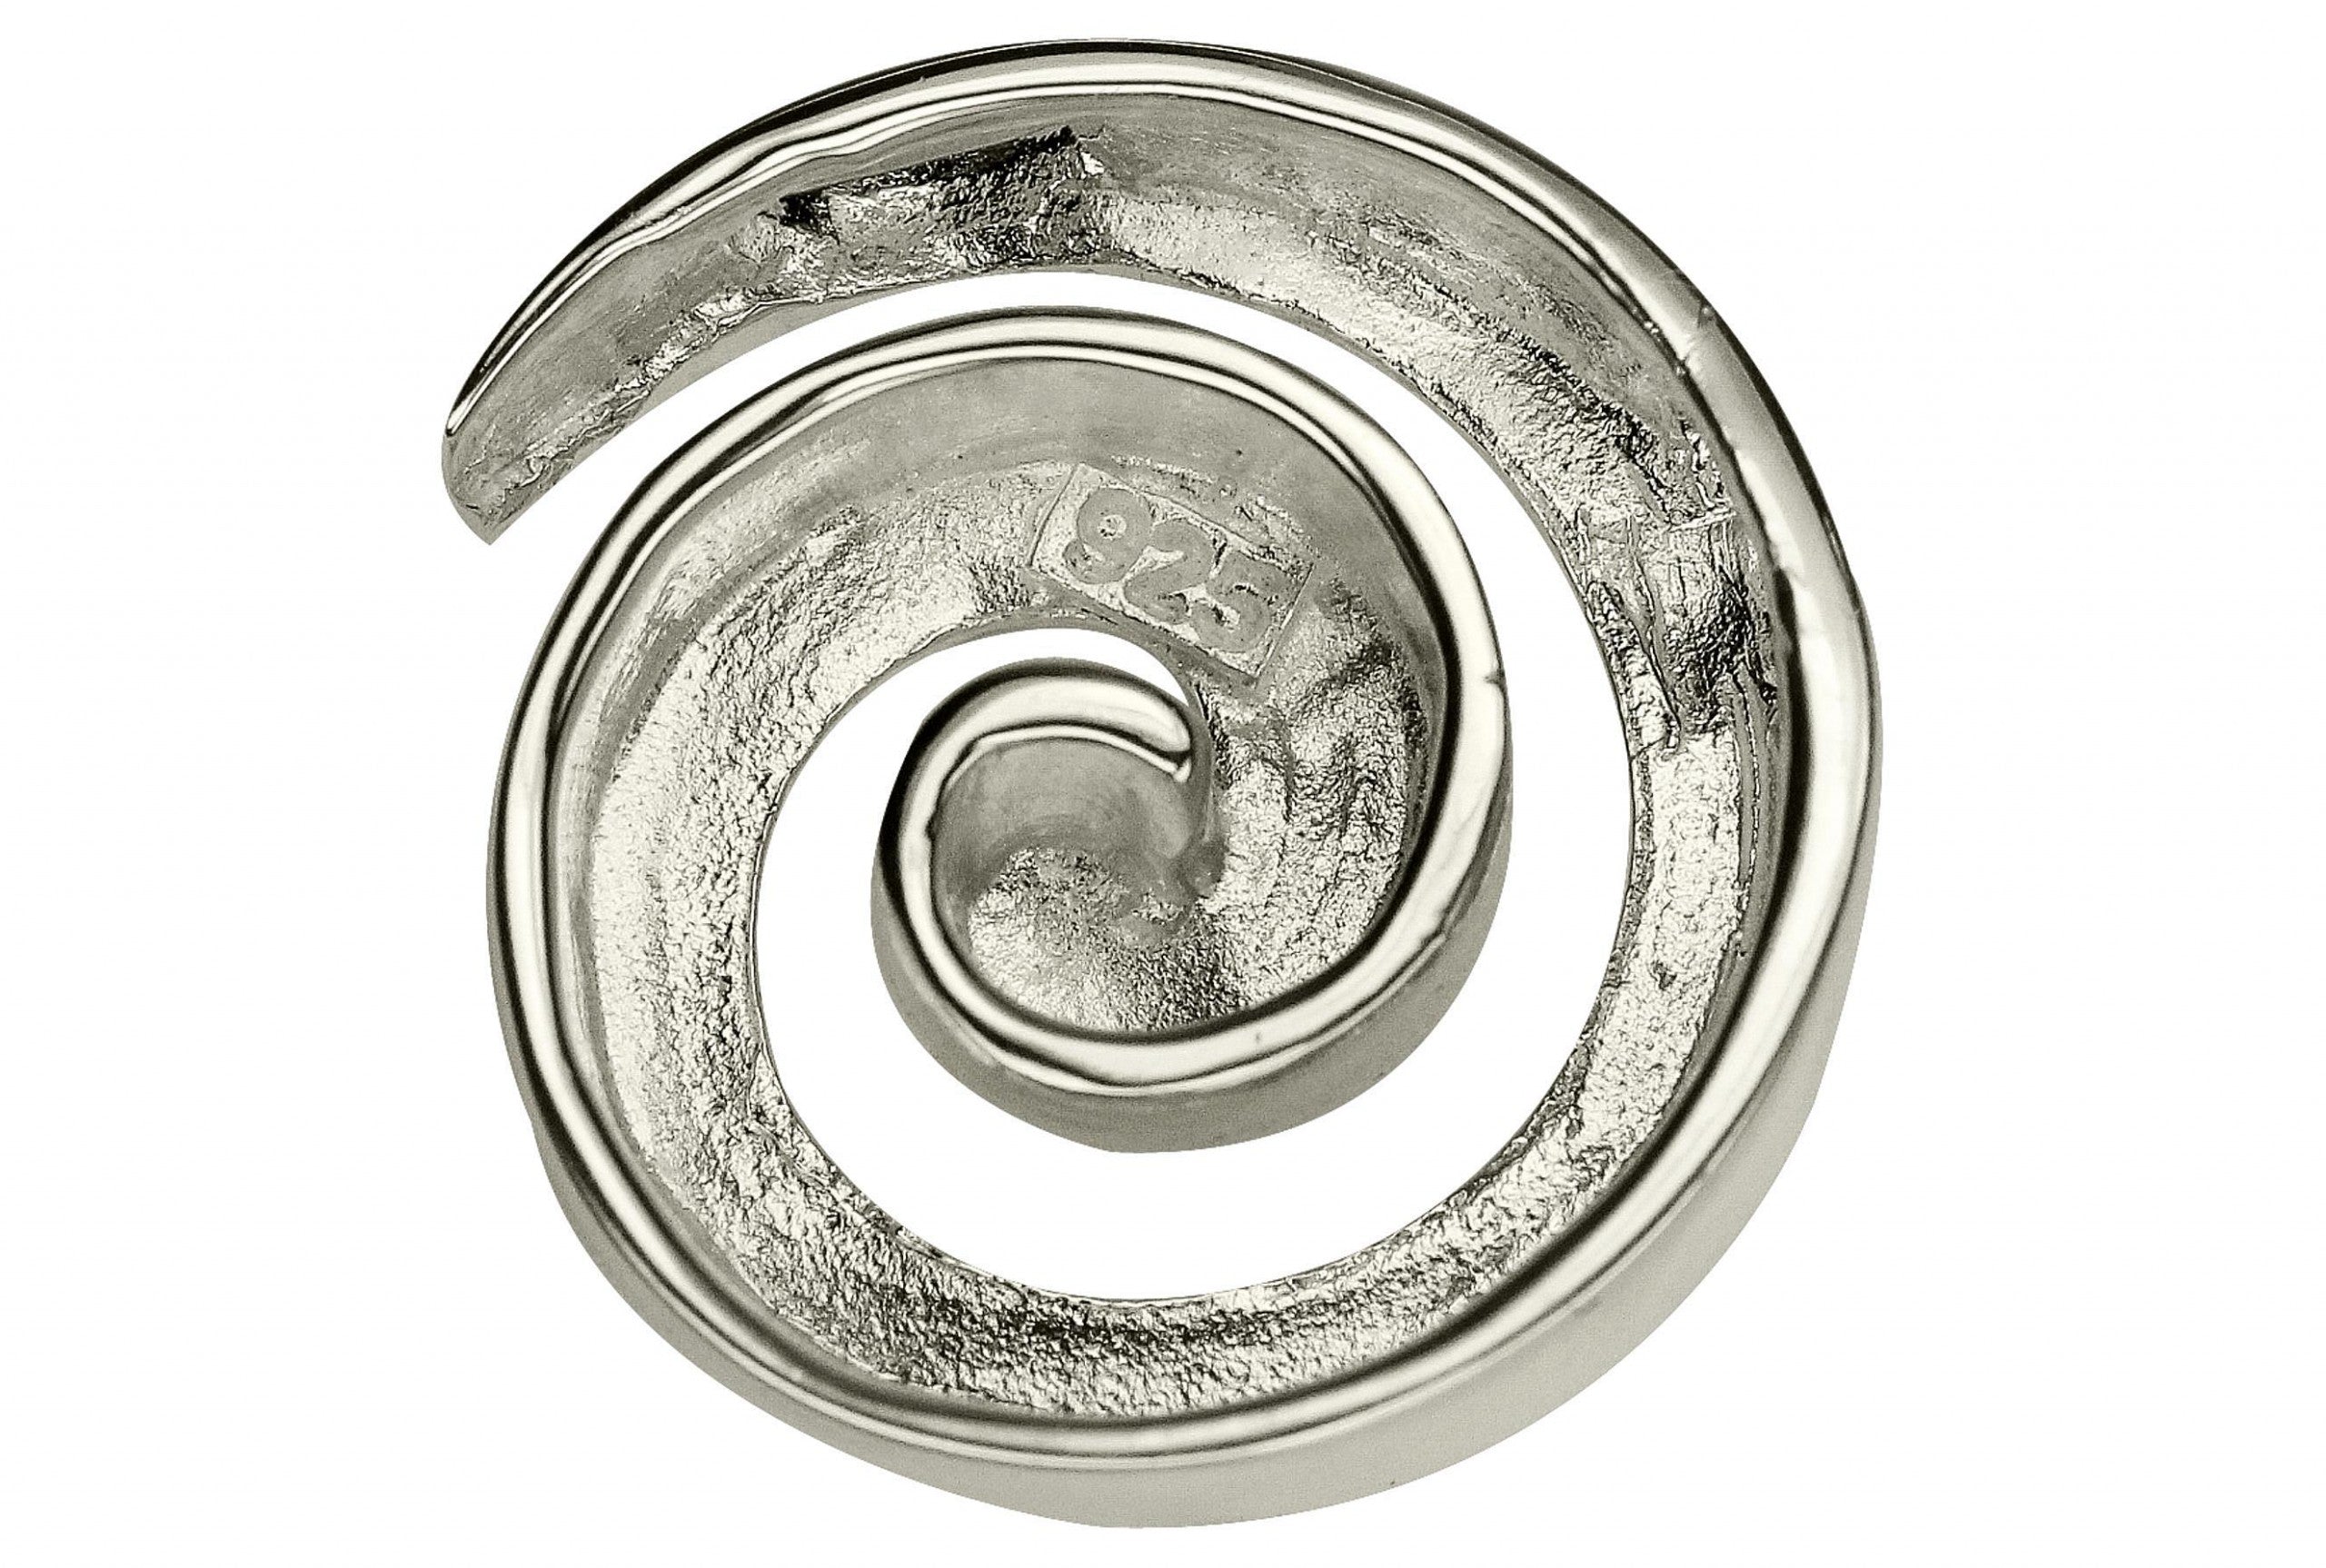 Anhänger aus Silber für Damen als Spirale mit mattierter Oberfläche. Der Anhänger besitzt geschickt versenkte Ösen, welche eine Kette mit ihm optisch verschmelzen lassen.